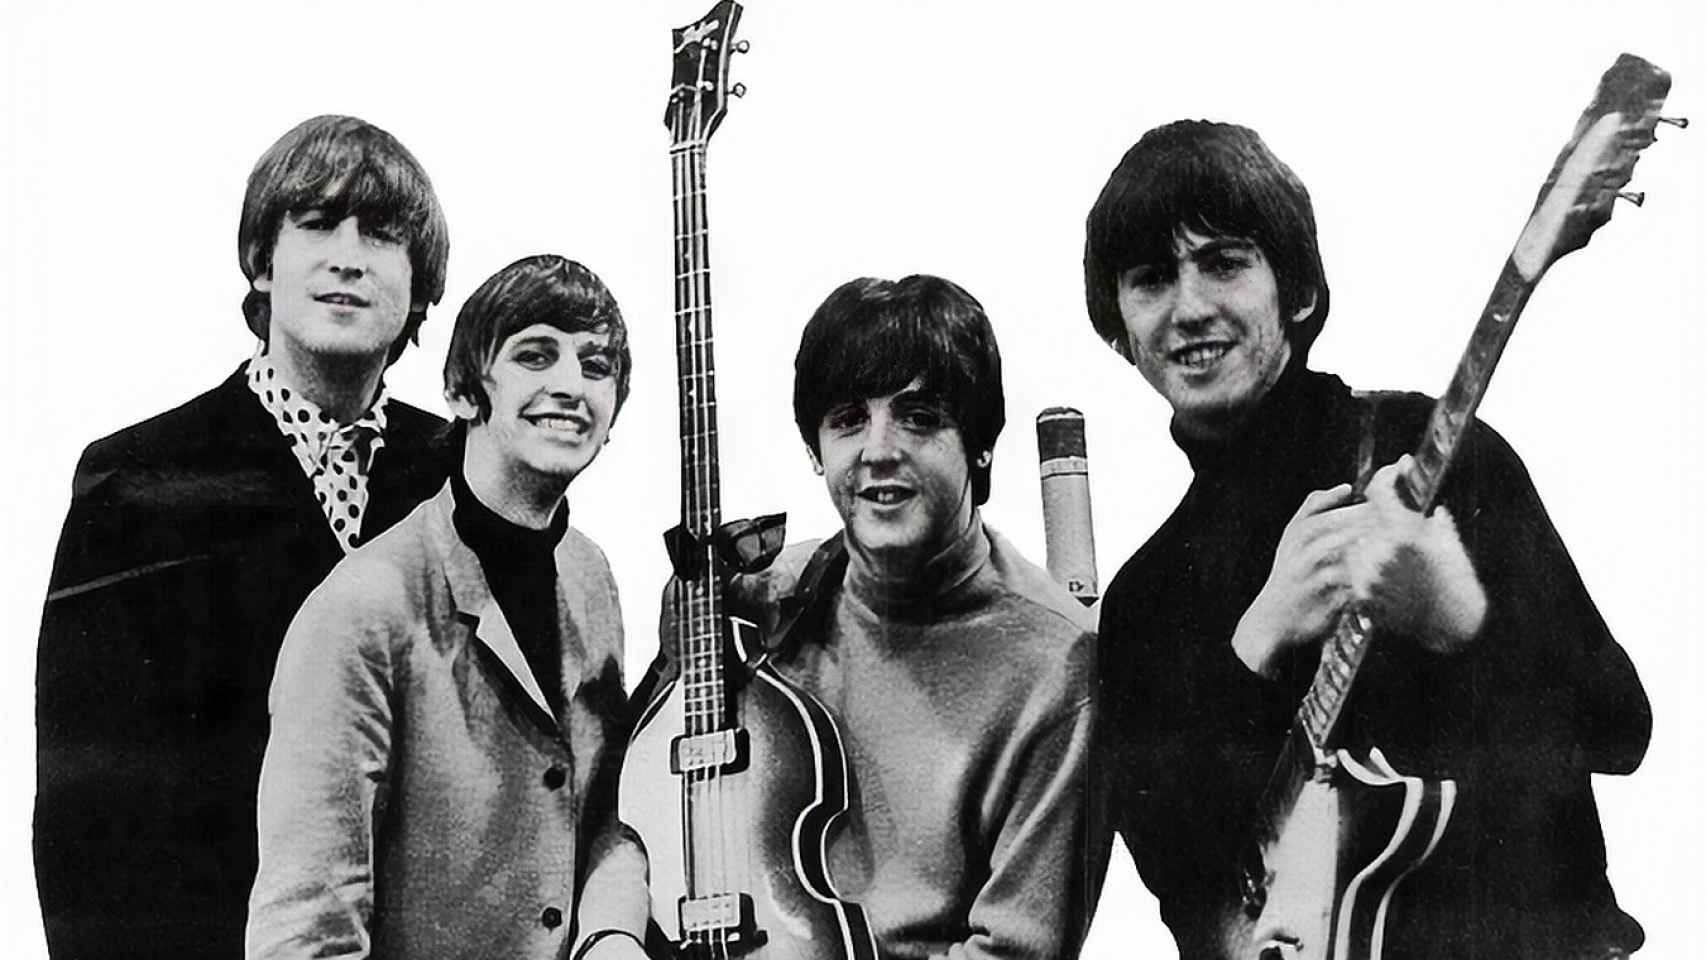 Anuncio comercial de los Grammy de 1964 de The Beatles